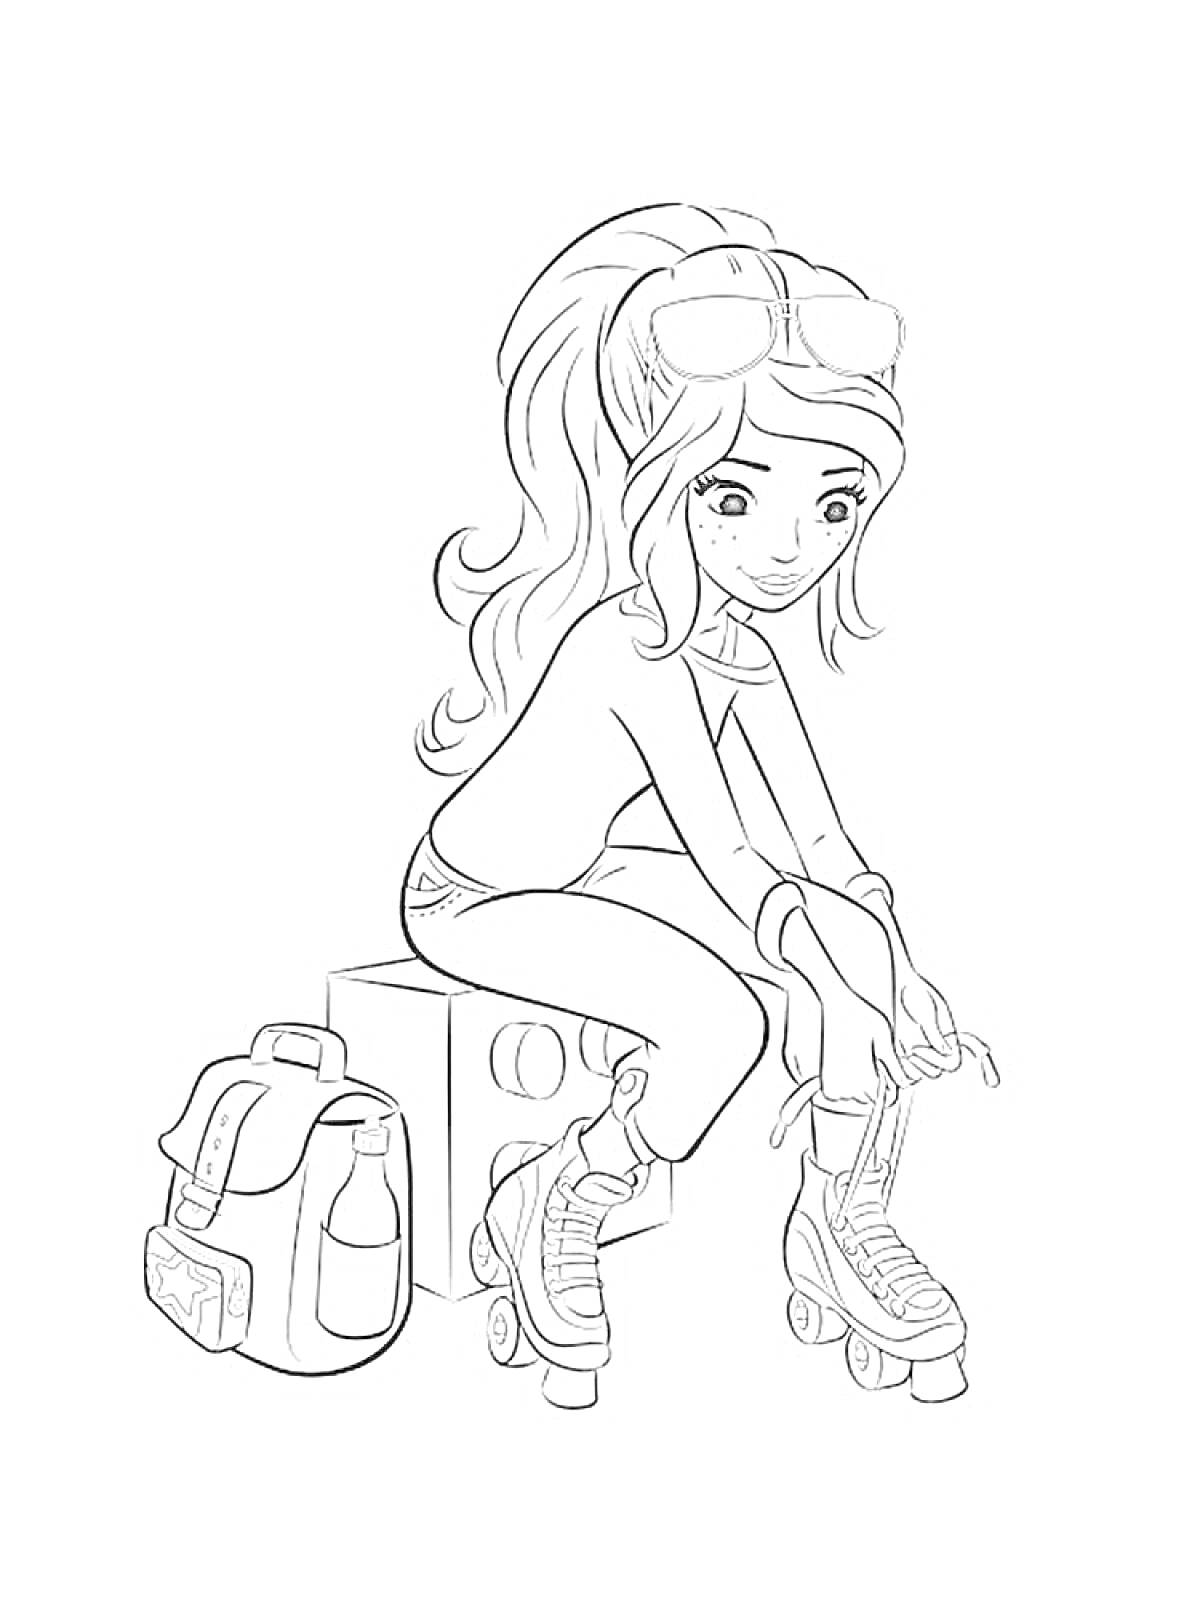 Раскраска Девочка из Лего Френдс на роликовых коньках, рядом рюкзак и бутылка